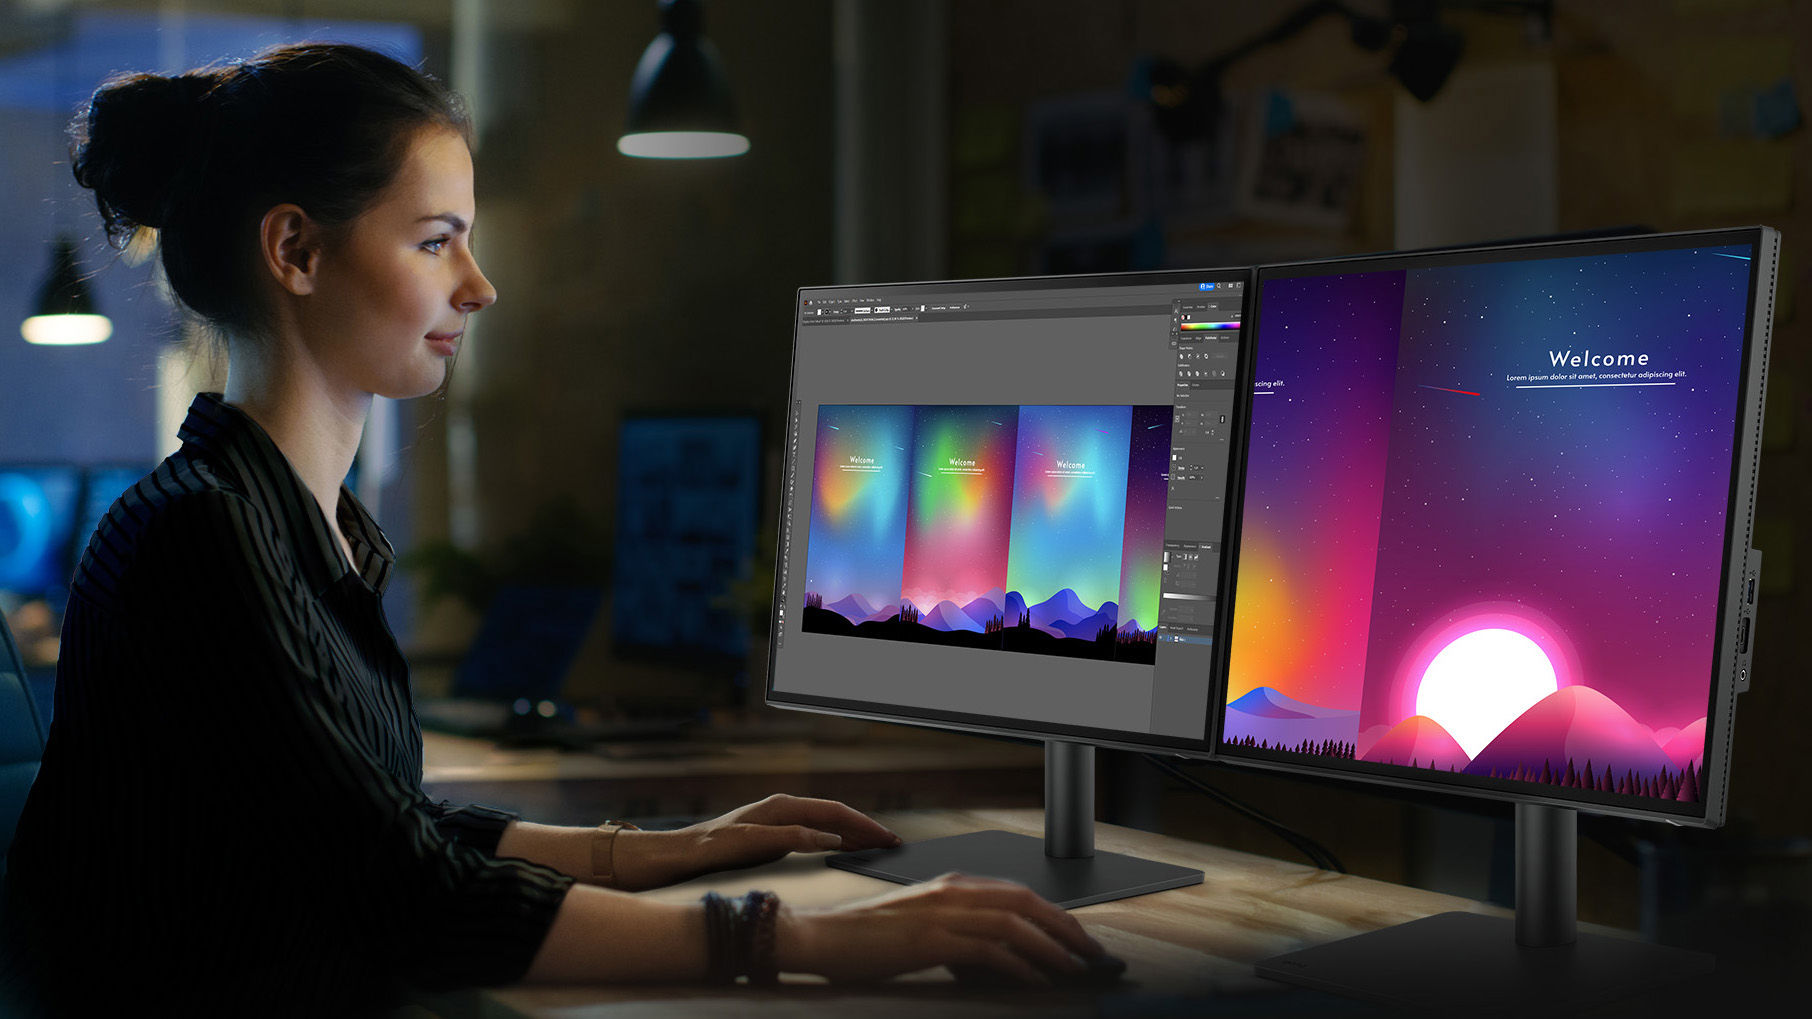 Програмне забезпечення Display ColorTalk полегшує синхронізацію кольорів на всіх моніторах лише кількома натисканнями. Заощаджуйте час і зусилля, зосереджуйтесь на креативності.